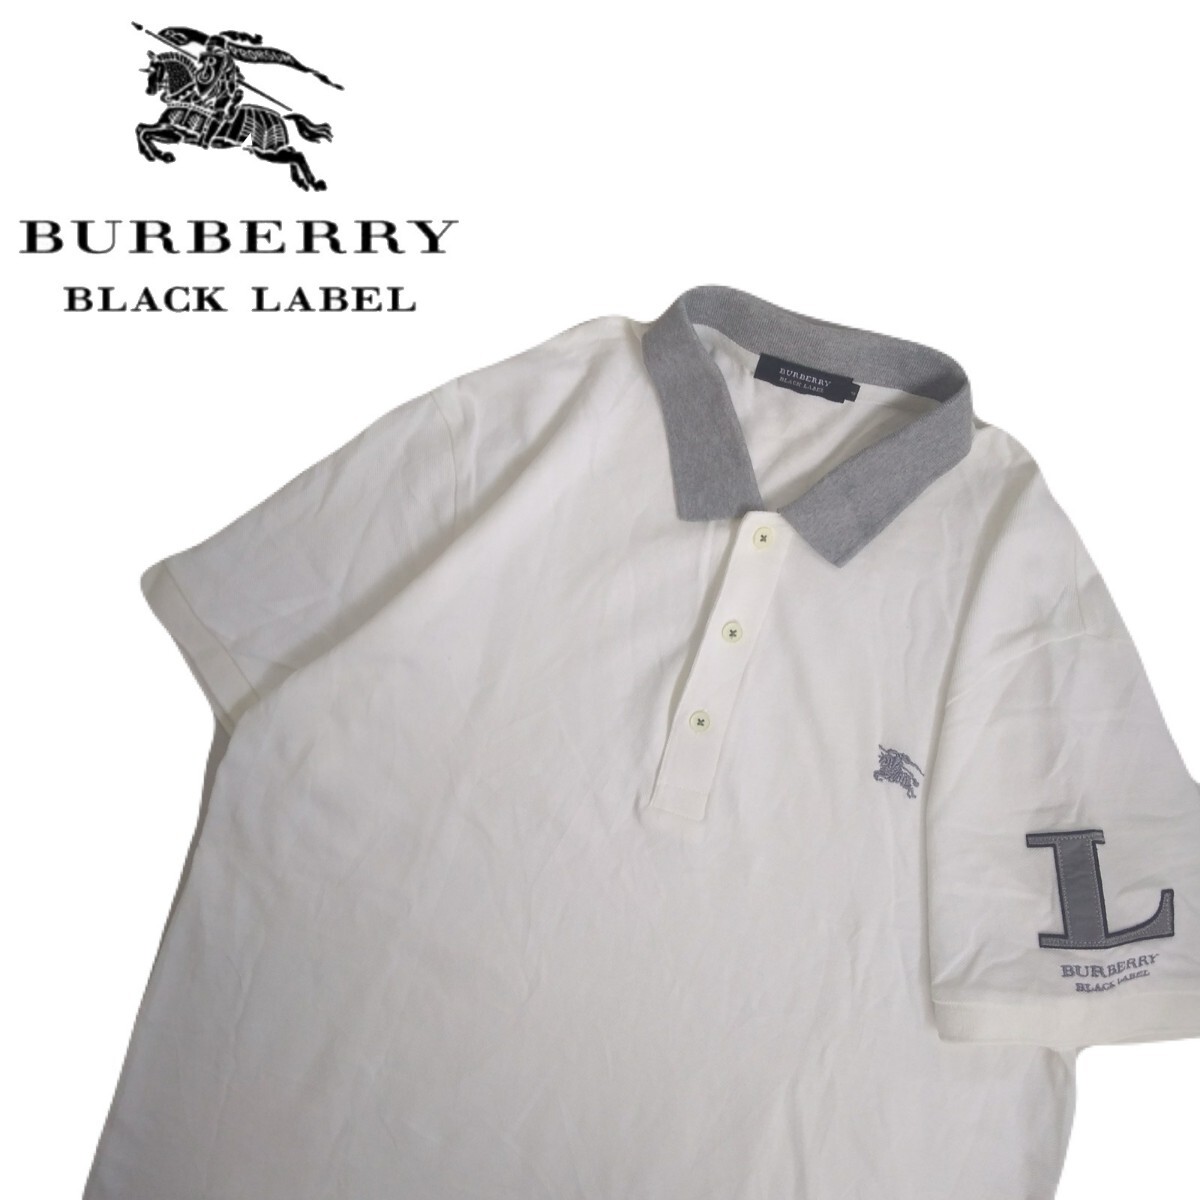 特大サイズ 極美品 名作 BURBERRY BLACK LABEL イニシャル 鹿の子 半袖ポロシャツ メンズ4 バーバリー ブラックレーベル ホワイト 2403275_画像1